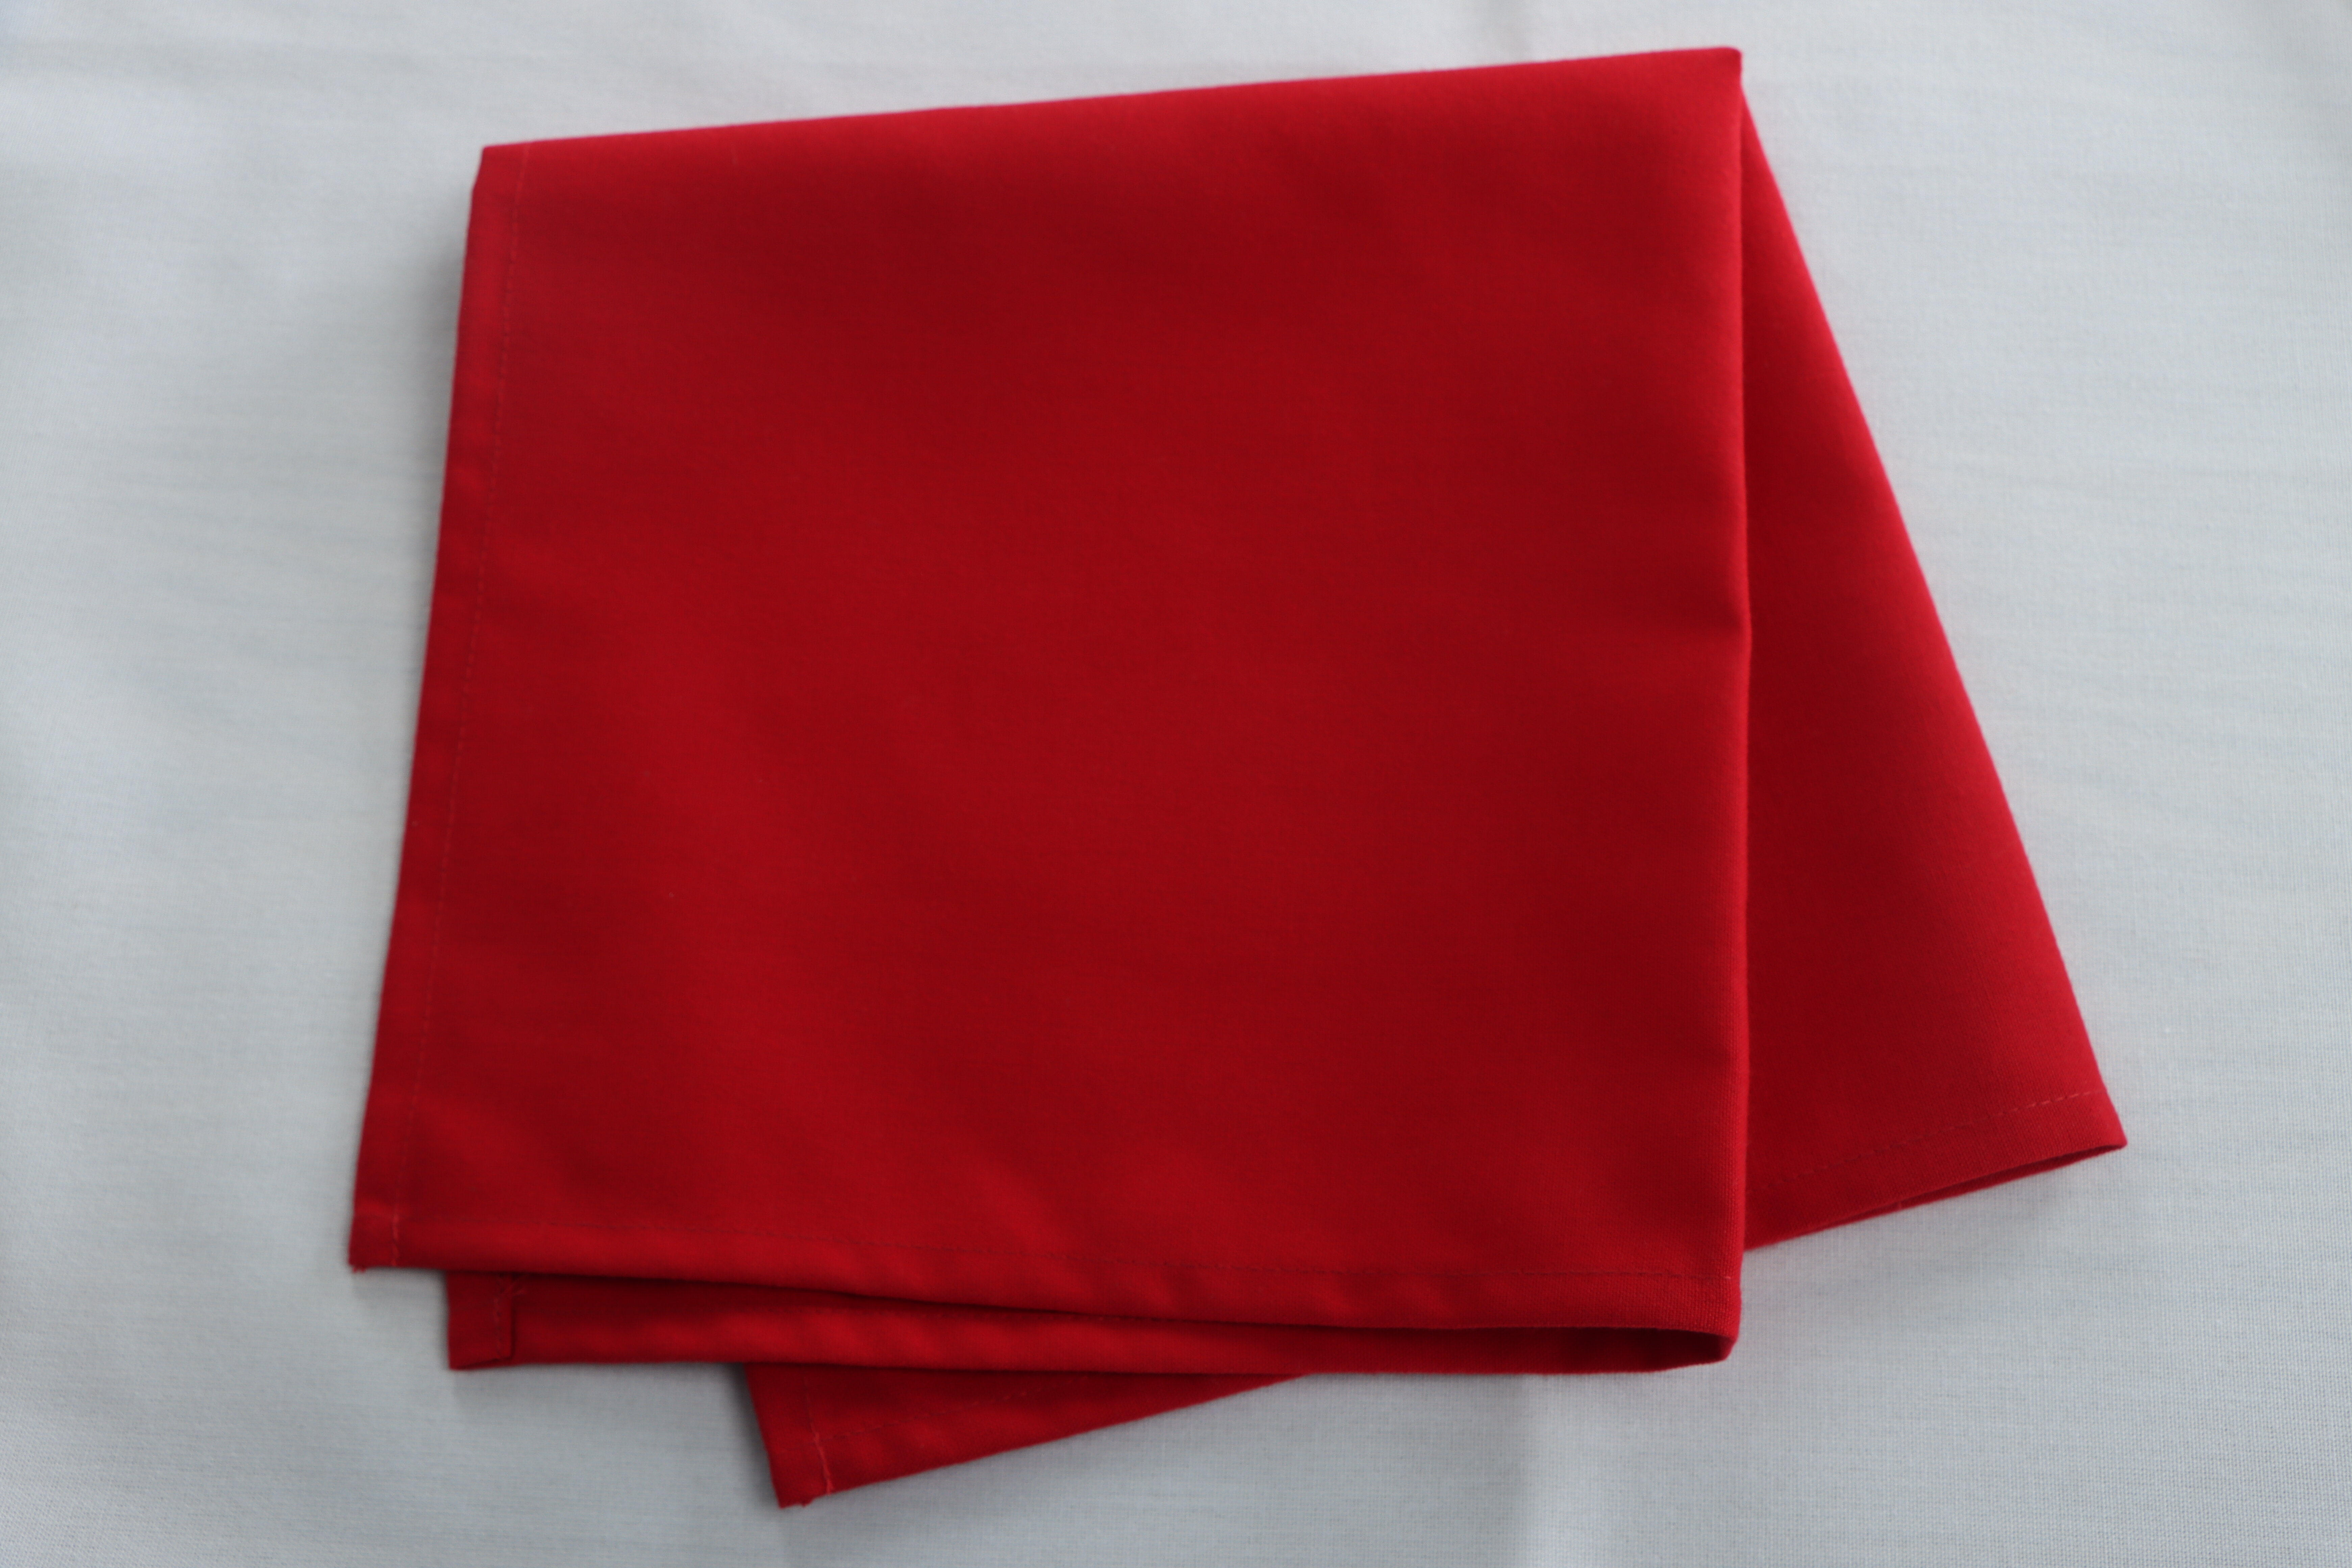 https://assets.wfcdn.com/im/25779802/compr-r85/1683/168362611/square-polyester-cloth-napkins-set-of-4.jpg